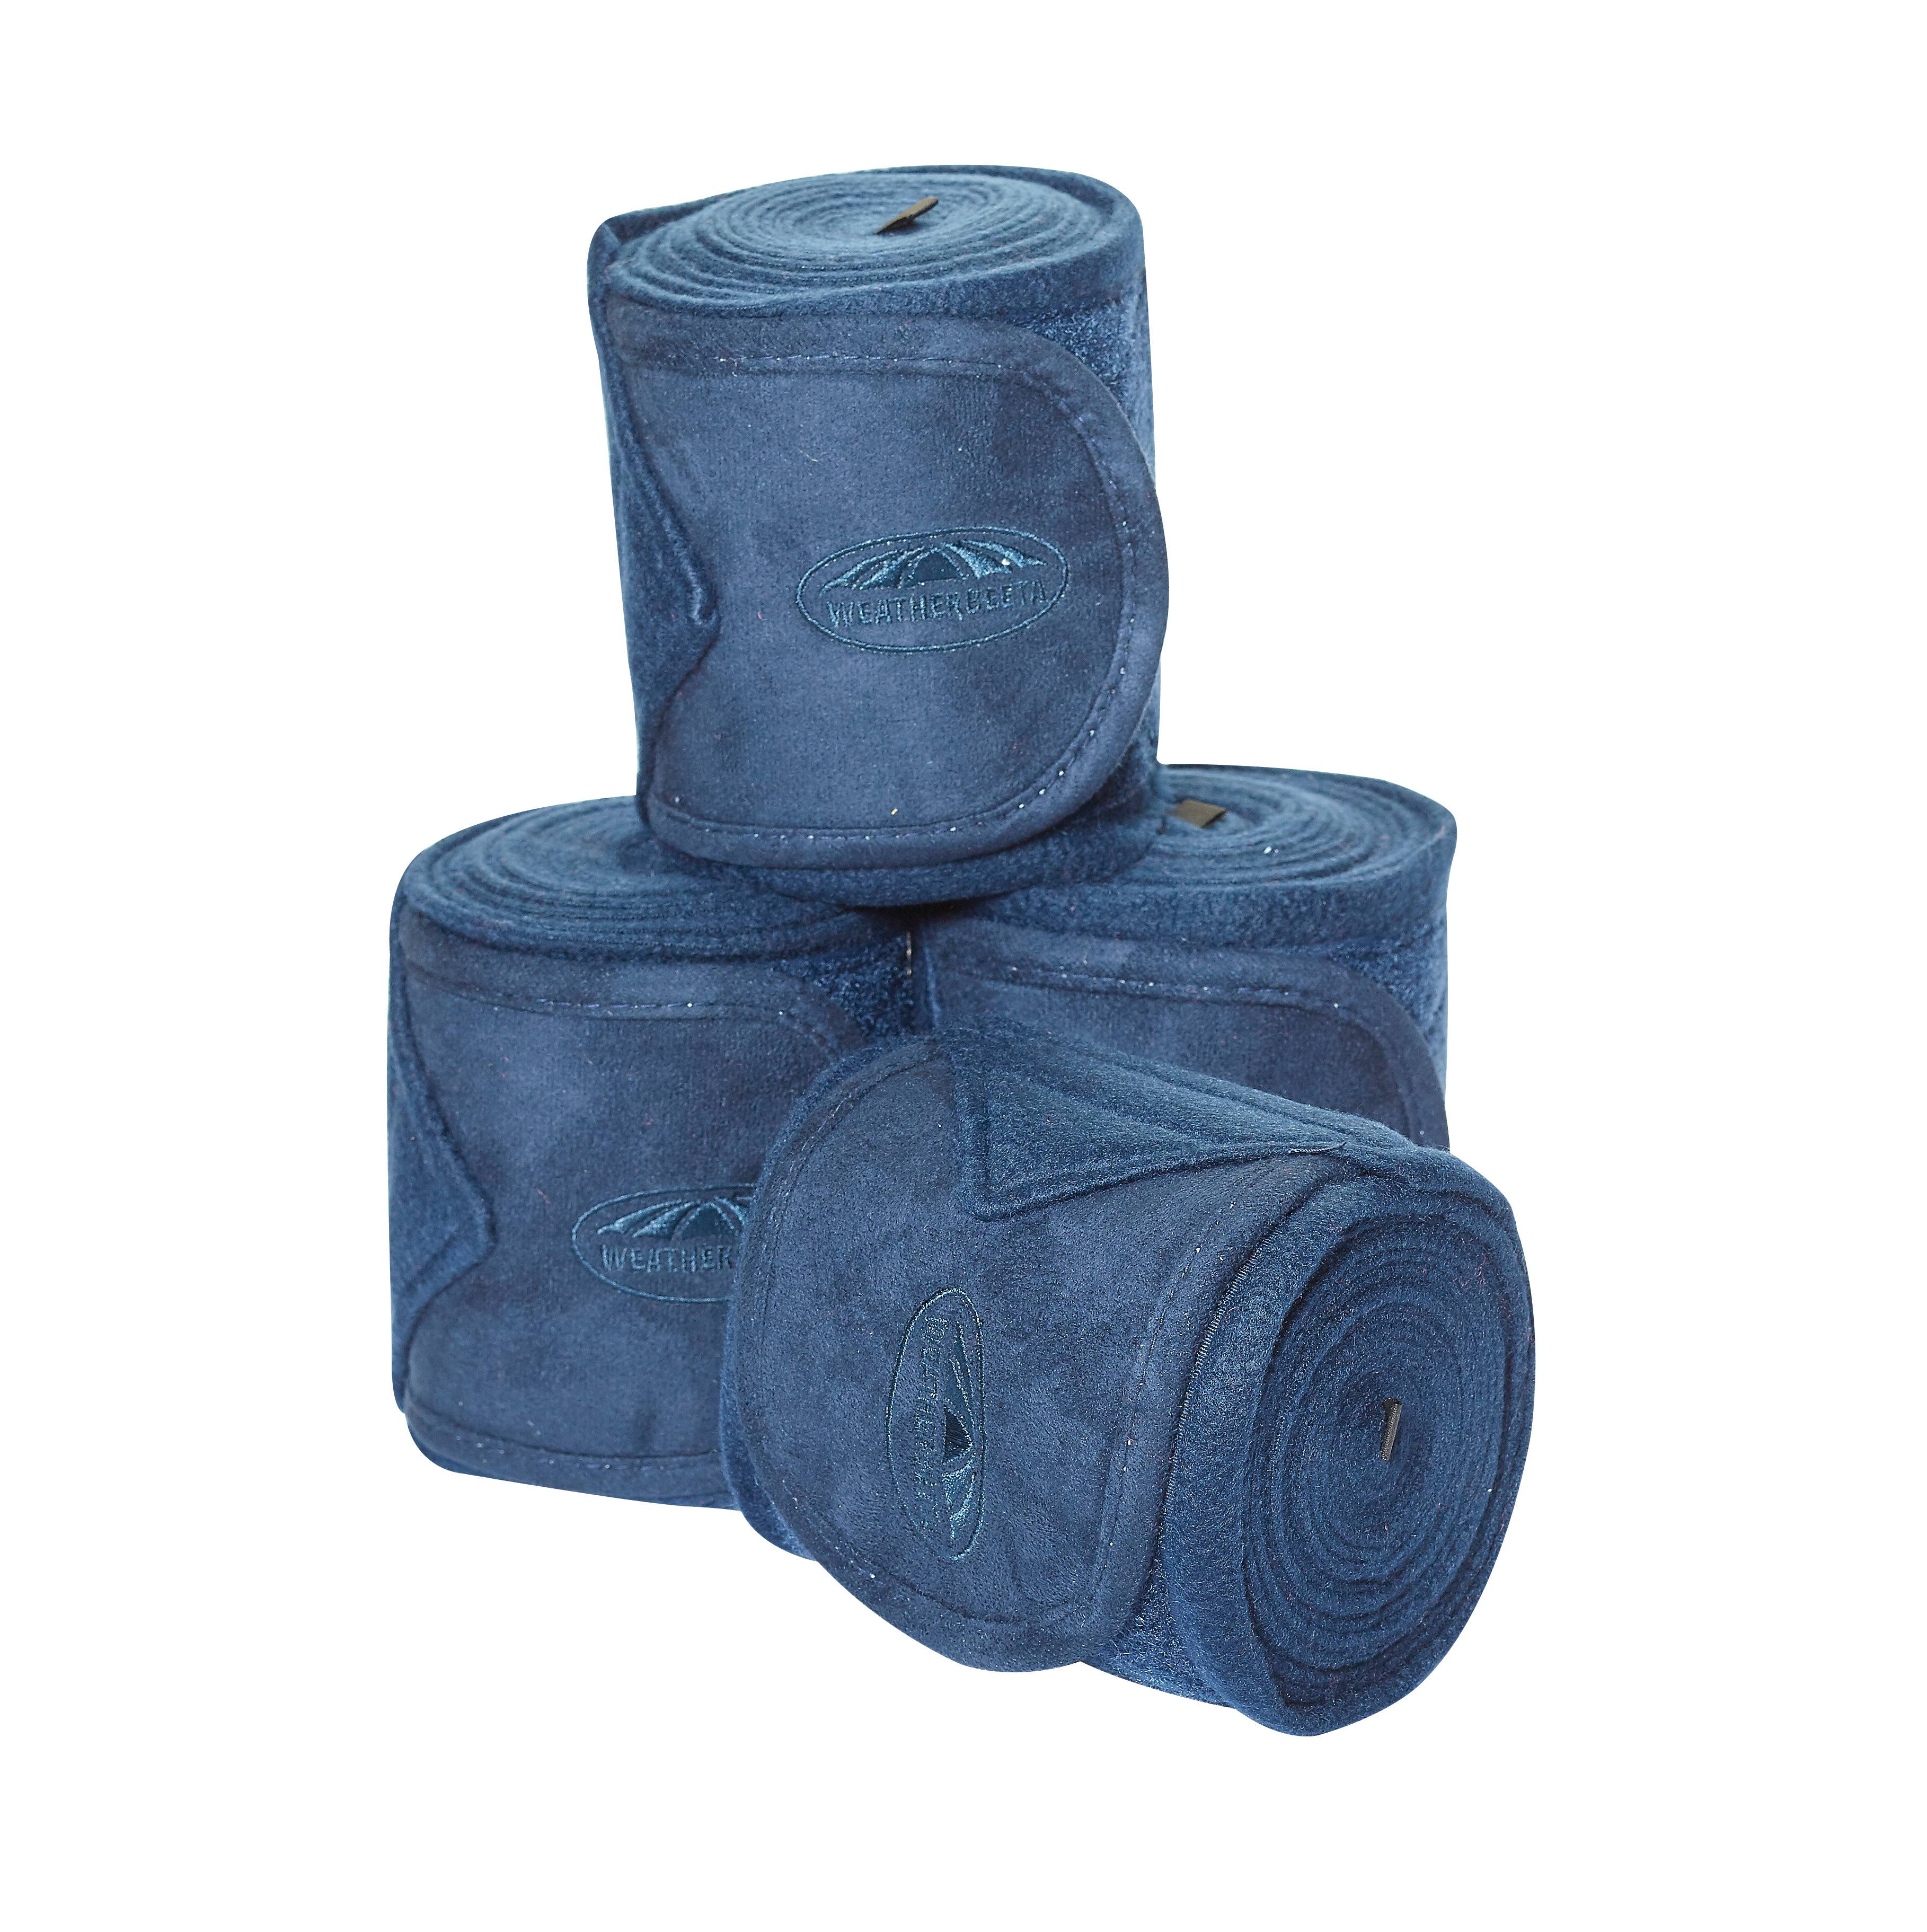 Strong anti-pilli Weatherbeeta Fleece Bandage 4 Pack High quality fleece fabric 